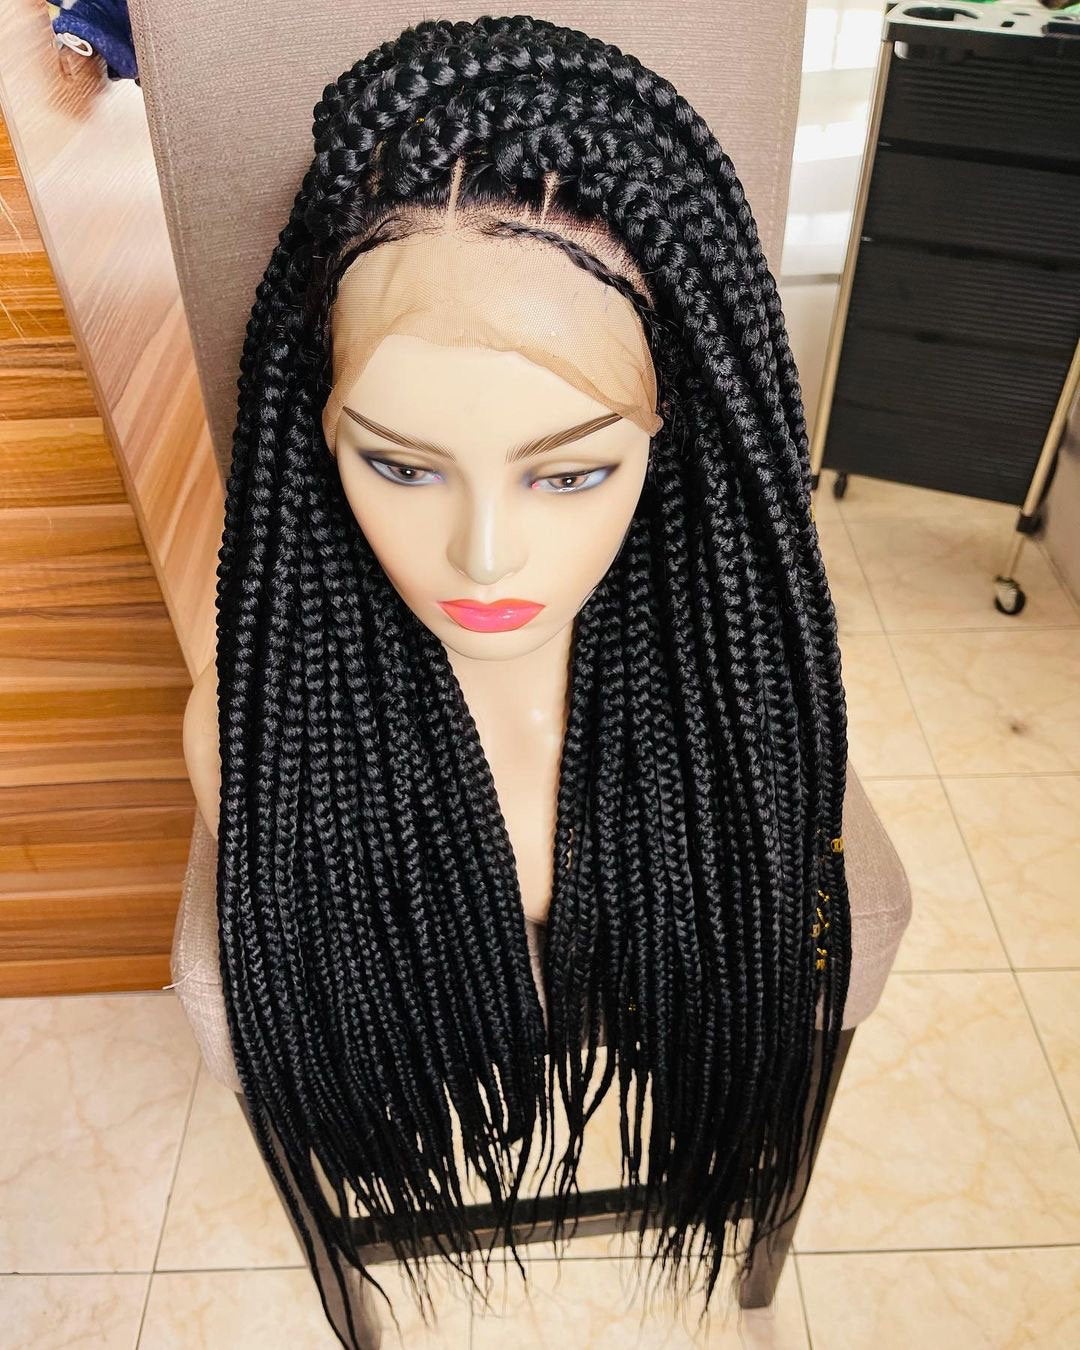 Jumbo Box braid wig, Large box braid wig, Box braided wig, Jumbo braids wig, Bohemian braids, Gypsy Boho braids, Braid wig for black women